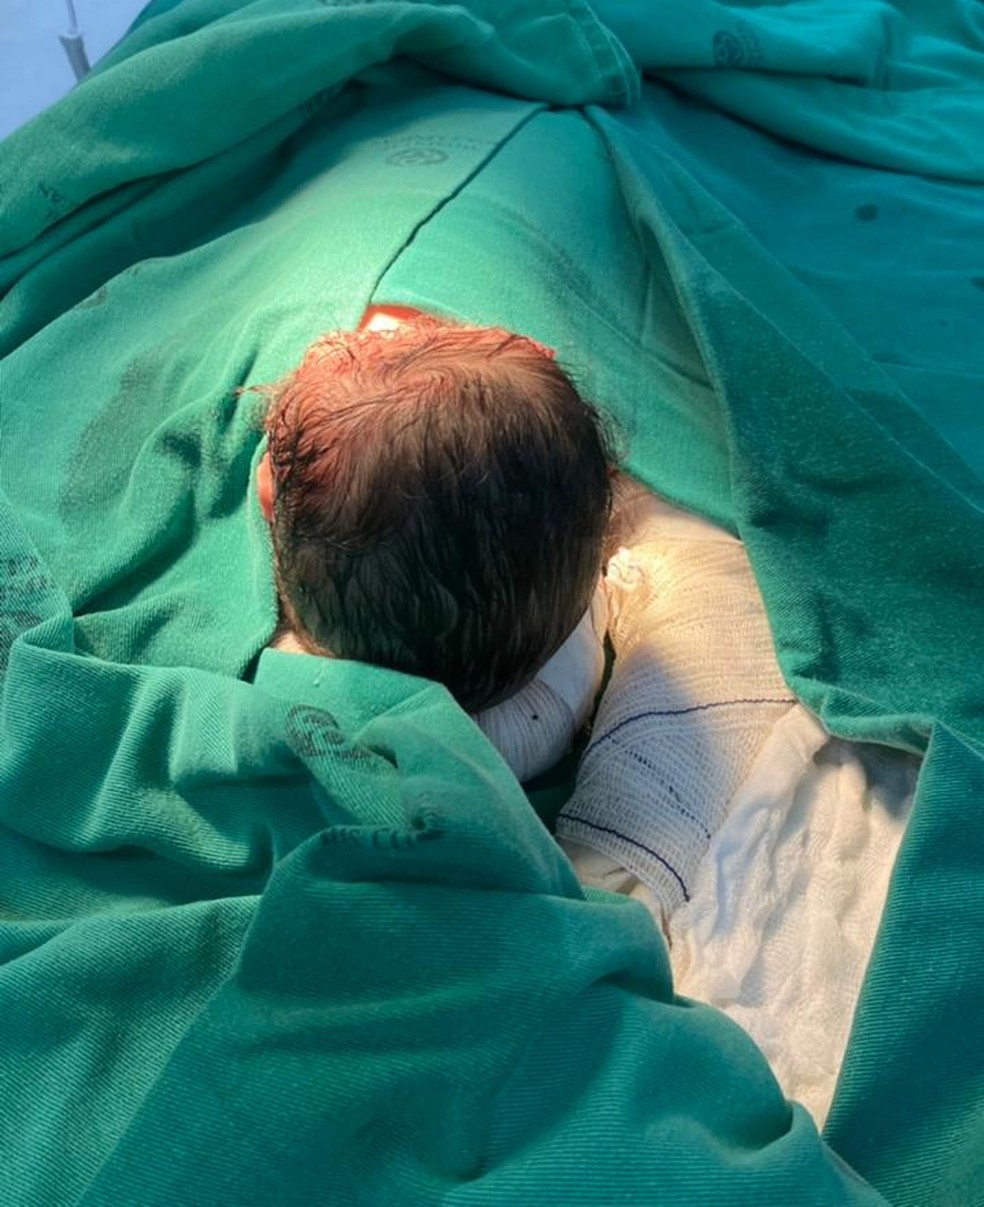 Cirurgia foi realizada com sucesso, mas bebê segue internado no Hospital da Criança tratando uma pneumonia — Foto: Arquivo pessoal 